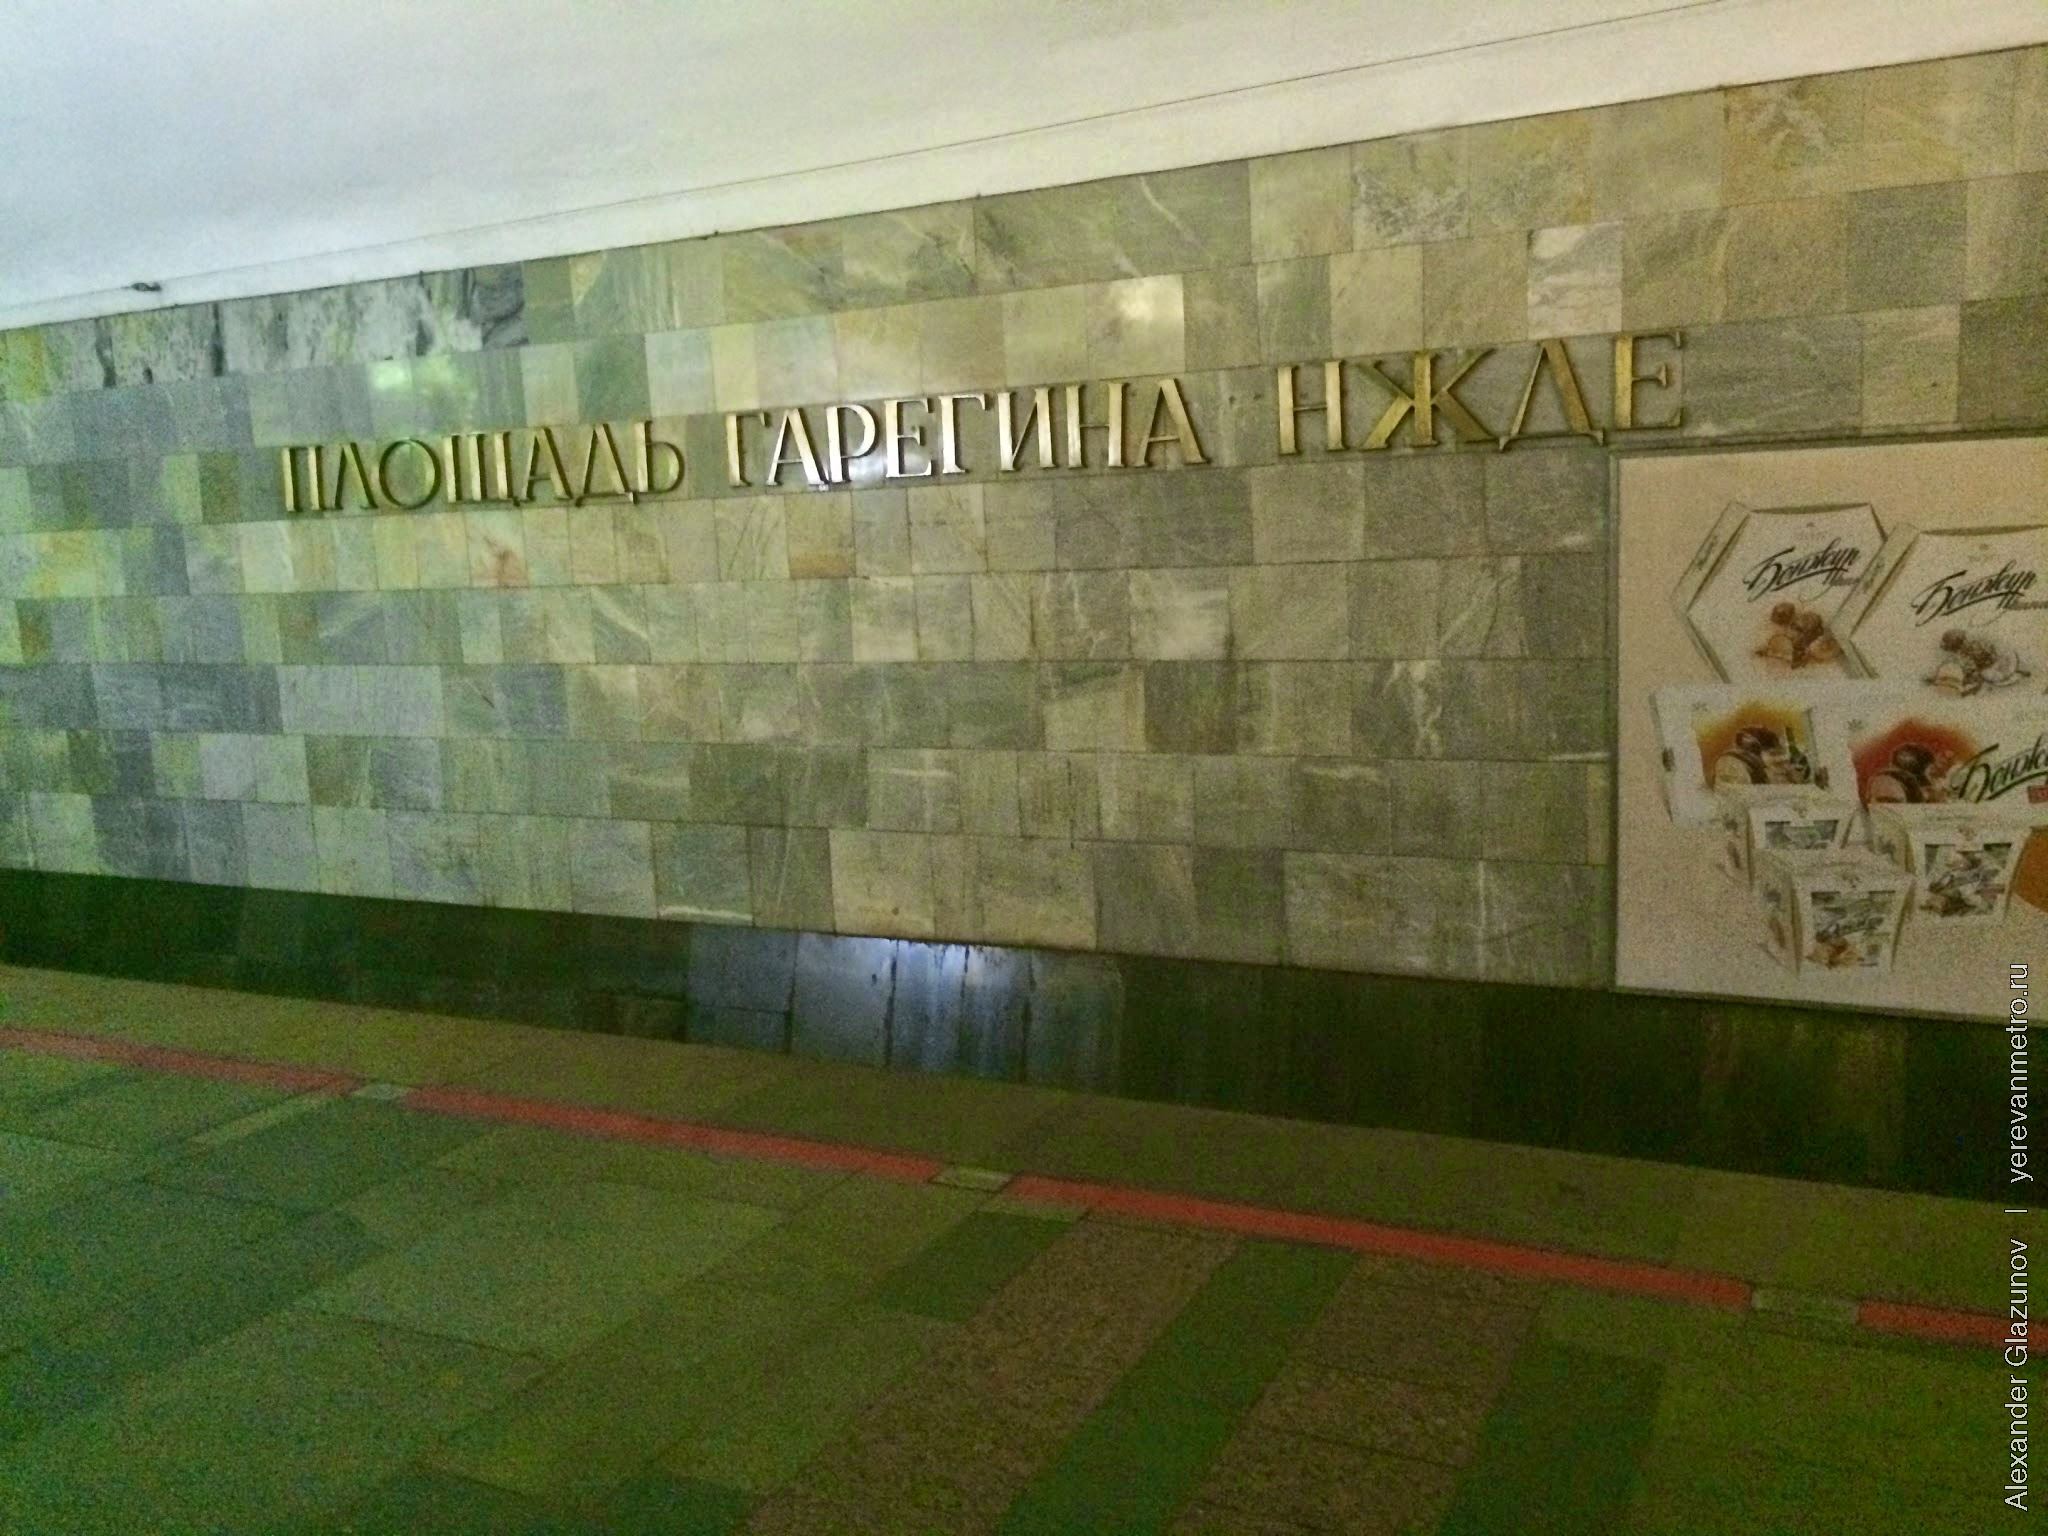 Путевая стена и перрон станции Площадь Гарегина Нжде